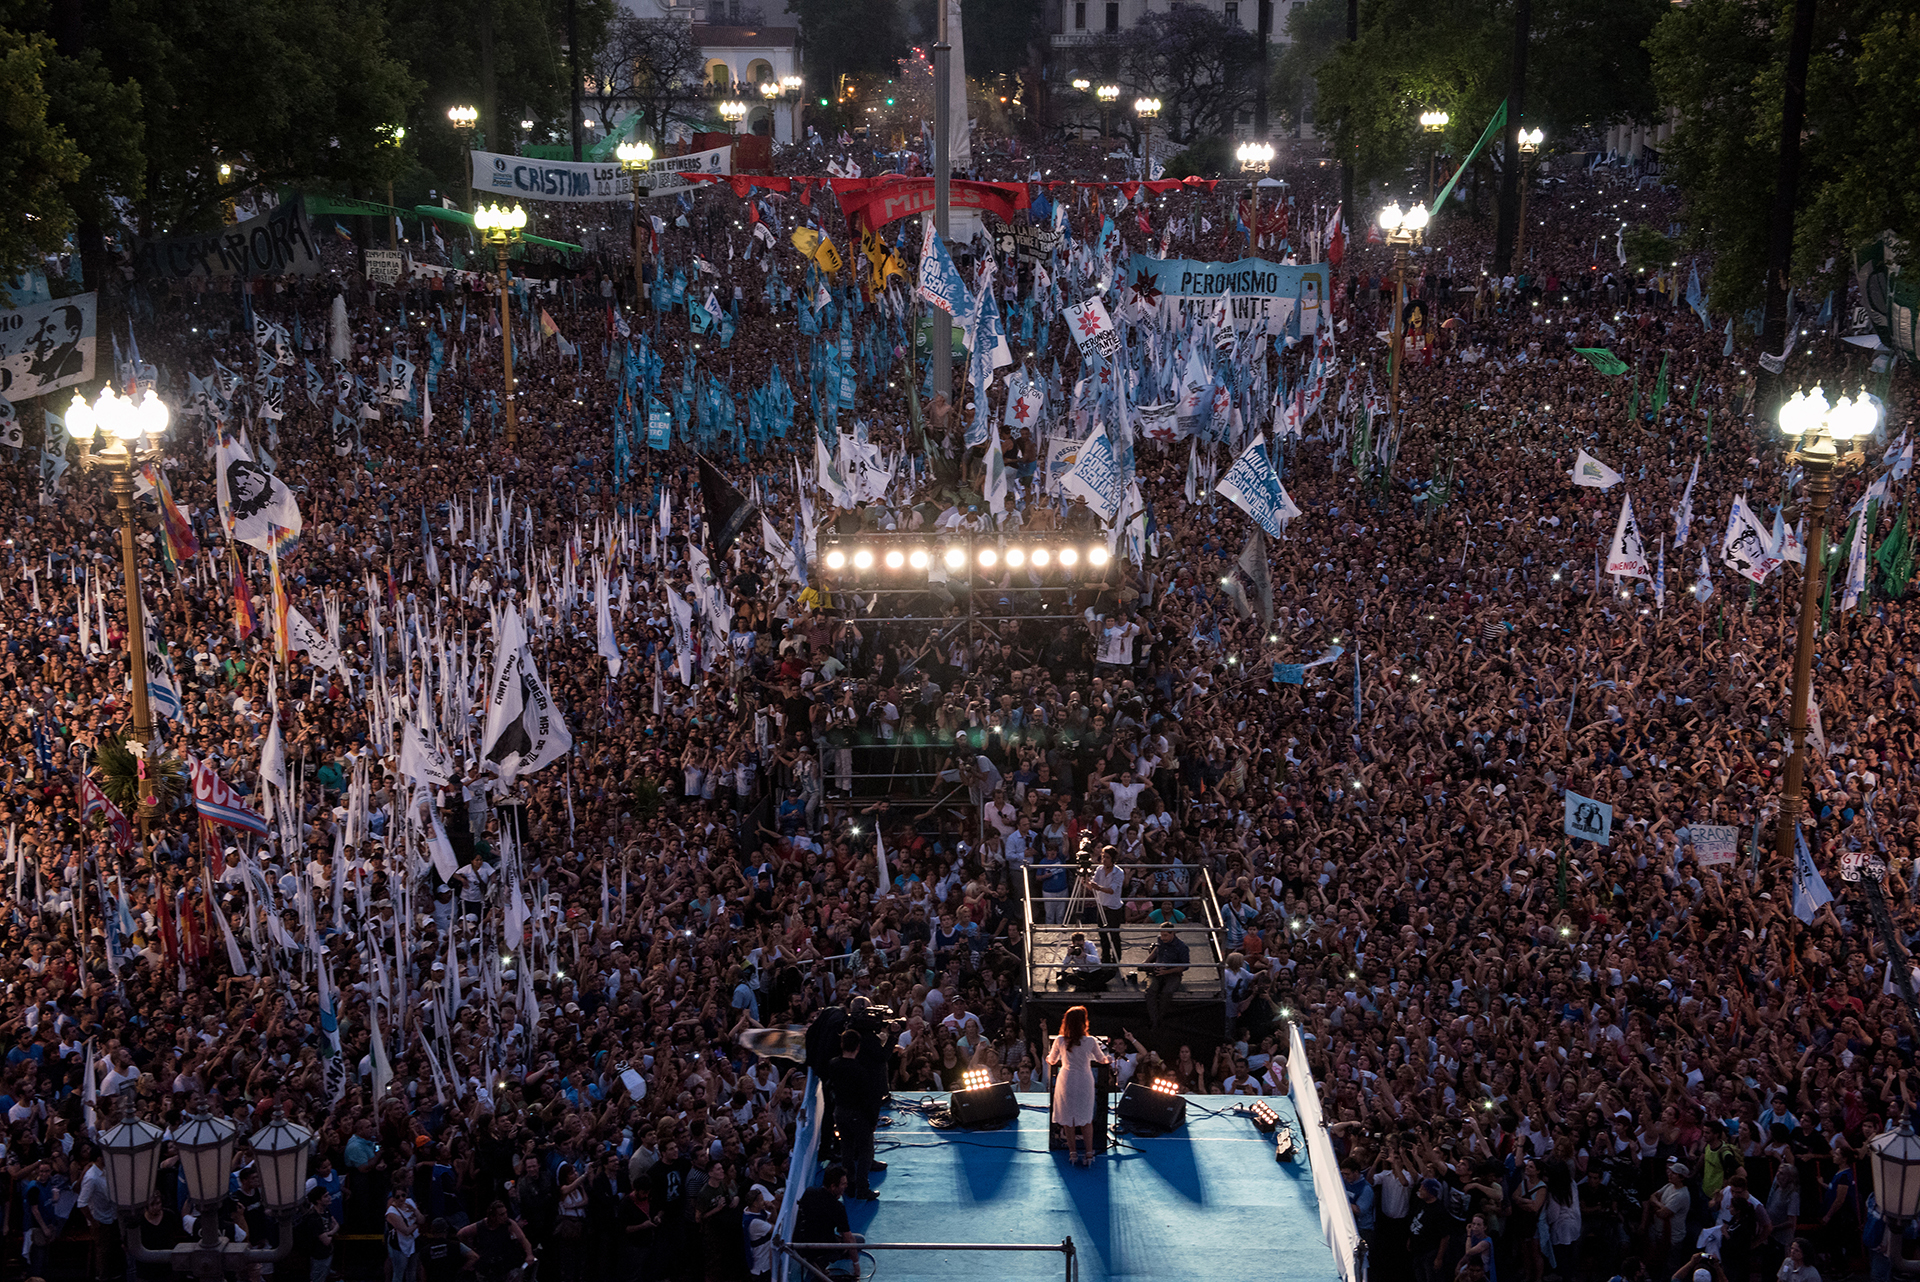 Cristina Fernandez de Kirchner cuando dio su último discurso en la Plaza de Mayo como presidenta (Maria Eugenia Cerruti)